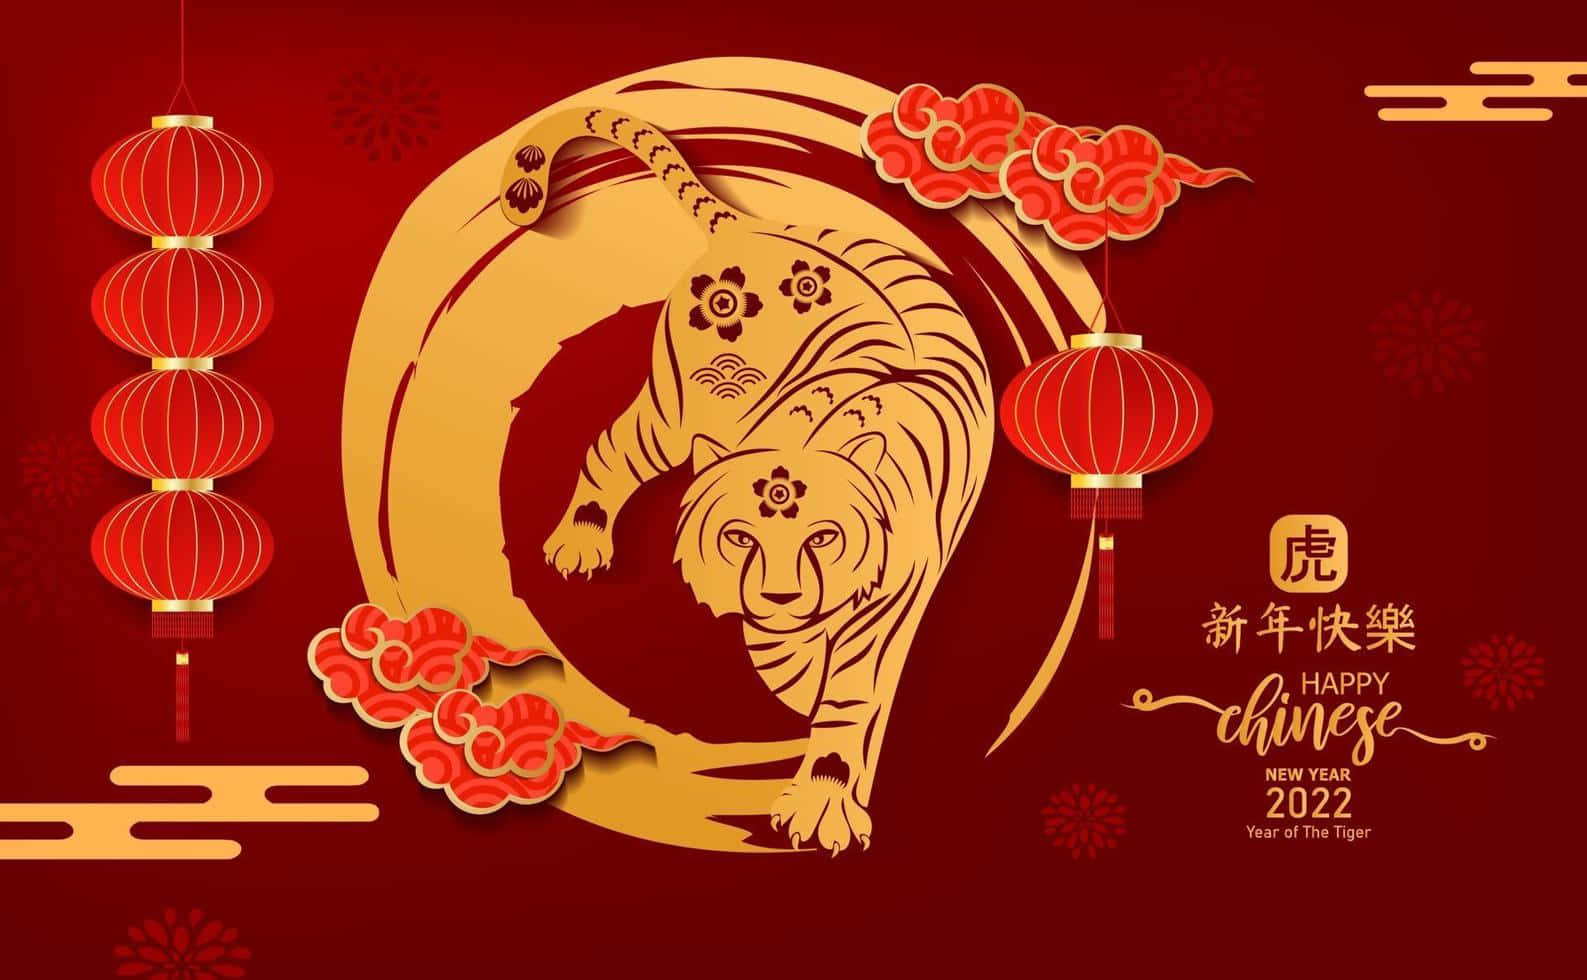 Celebraun Gioioso Capodanno Cinese 2022!